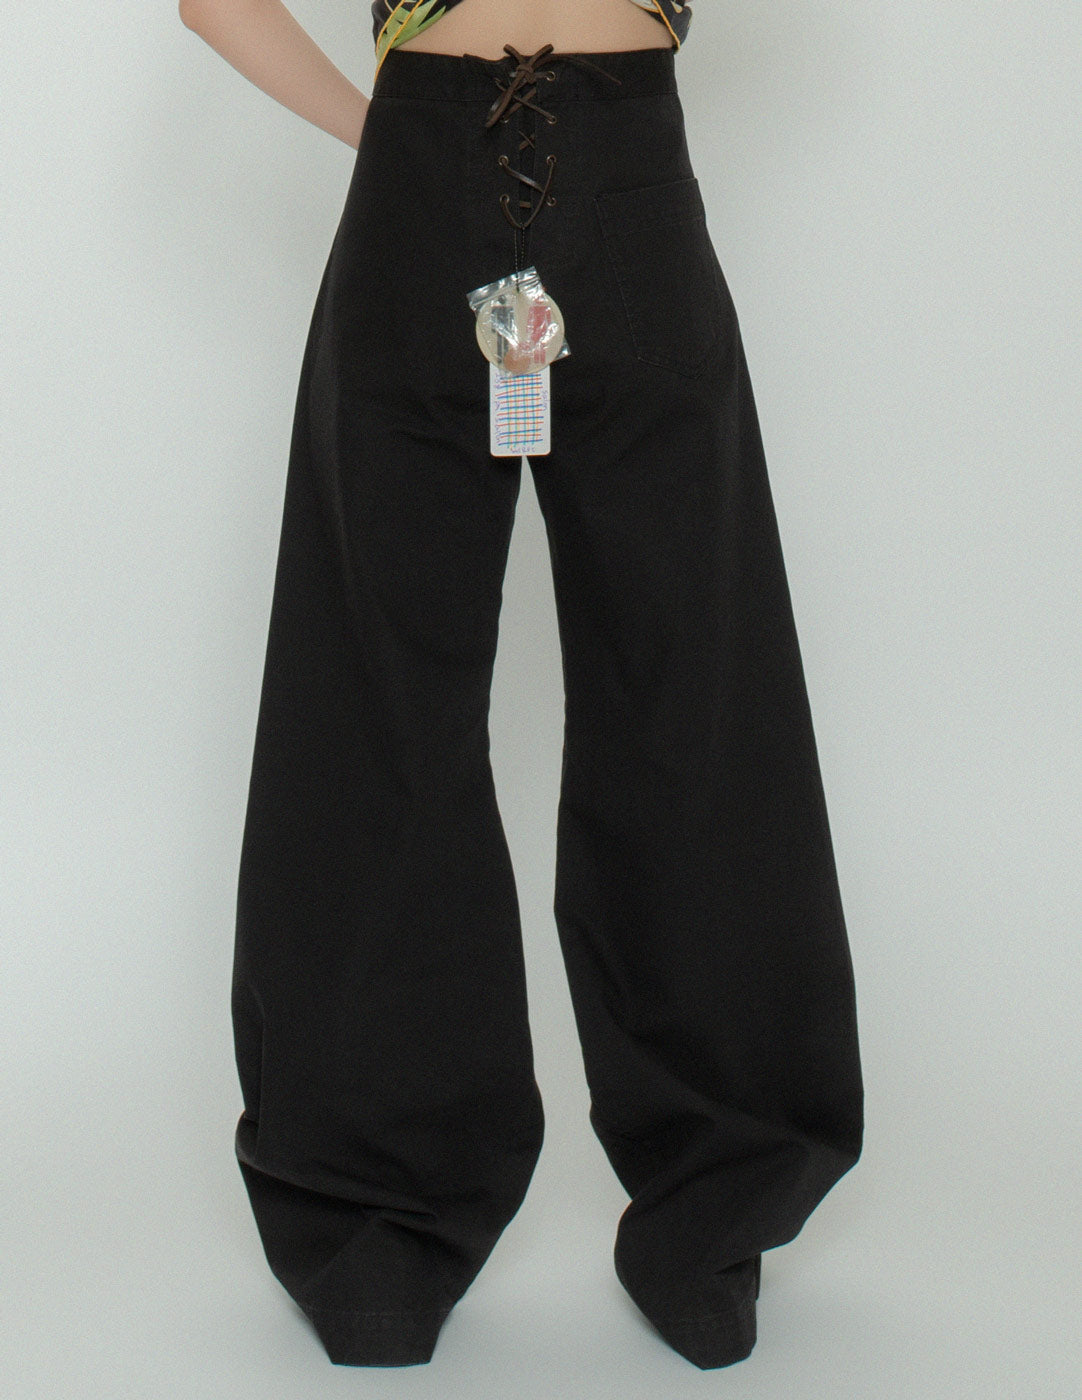 Jean Paul Gaultier structured cotton sailor trousers back detail